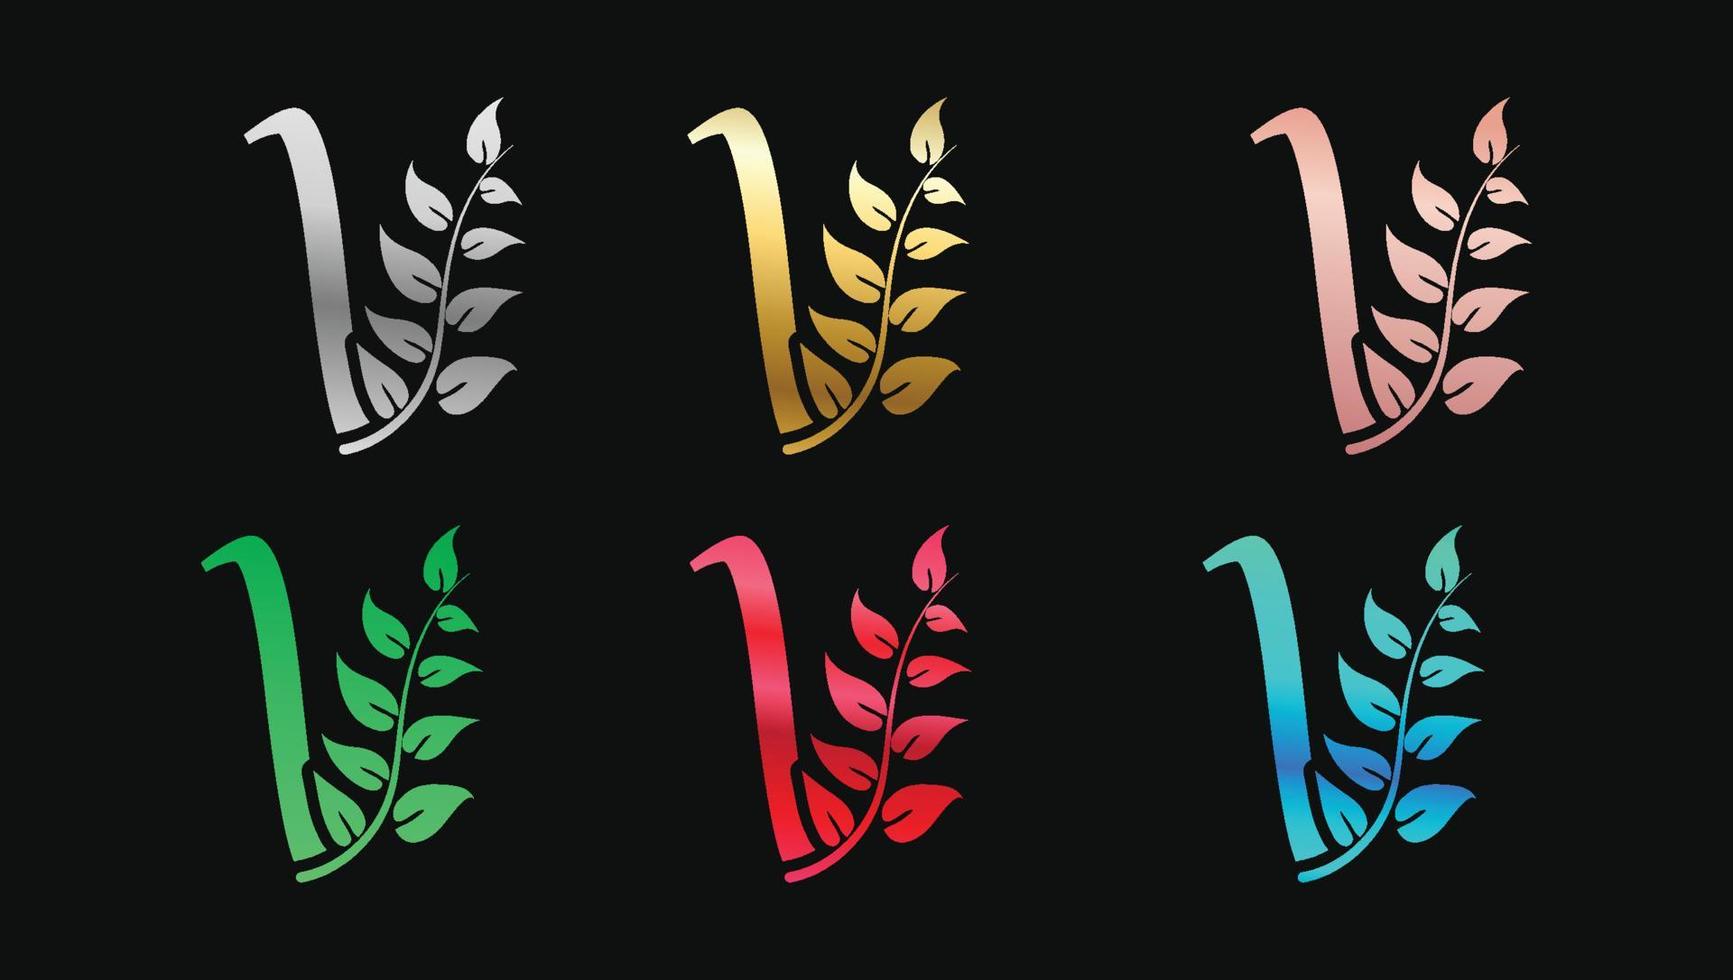 dekorativer buchstabe v in metallischen farben nennt anfängliche moderne logo-design-vorlage vektor